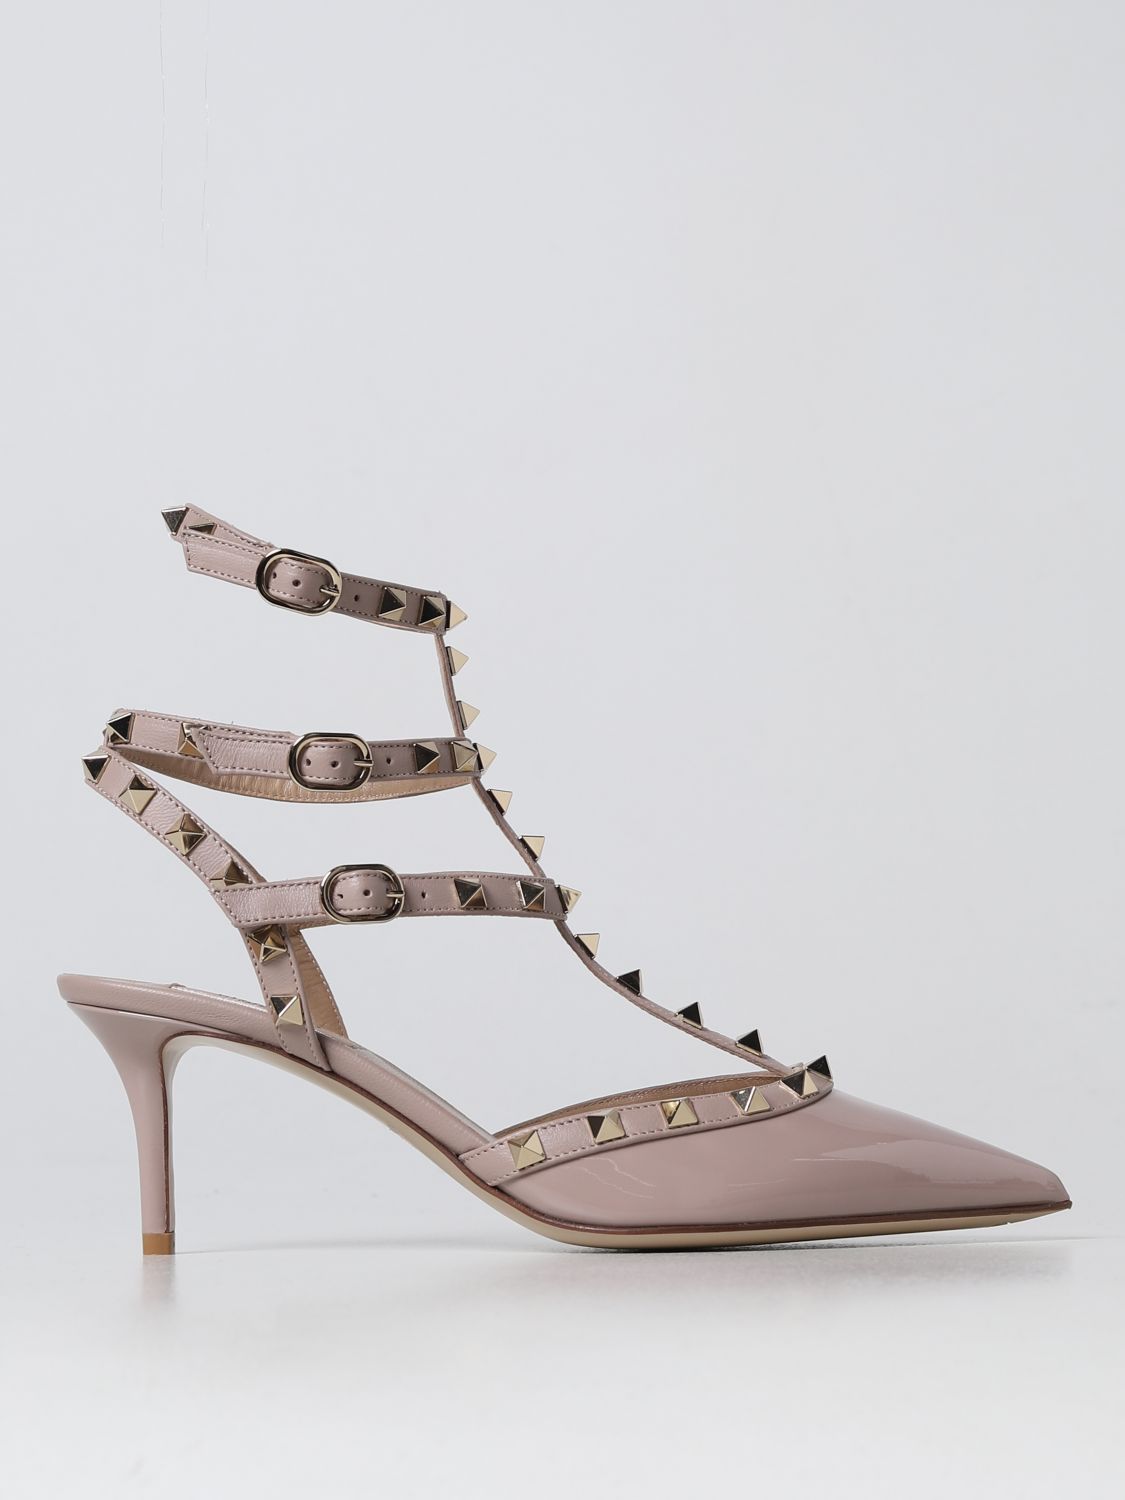 VALENTINO GARAVANI: pumps with Studs - Blush Pink | Valentino Garavani high heel shoes 2W2S0375VNW online on GIGLIO.COM